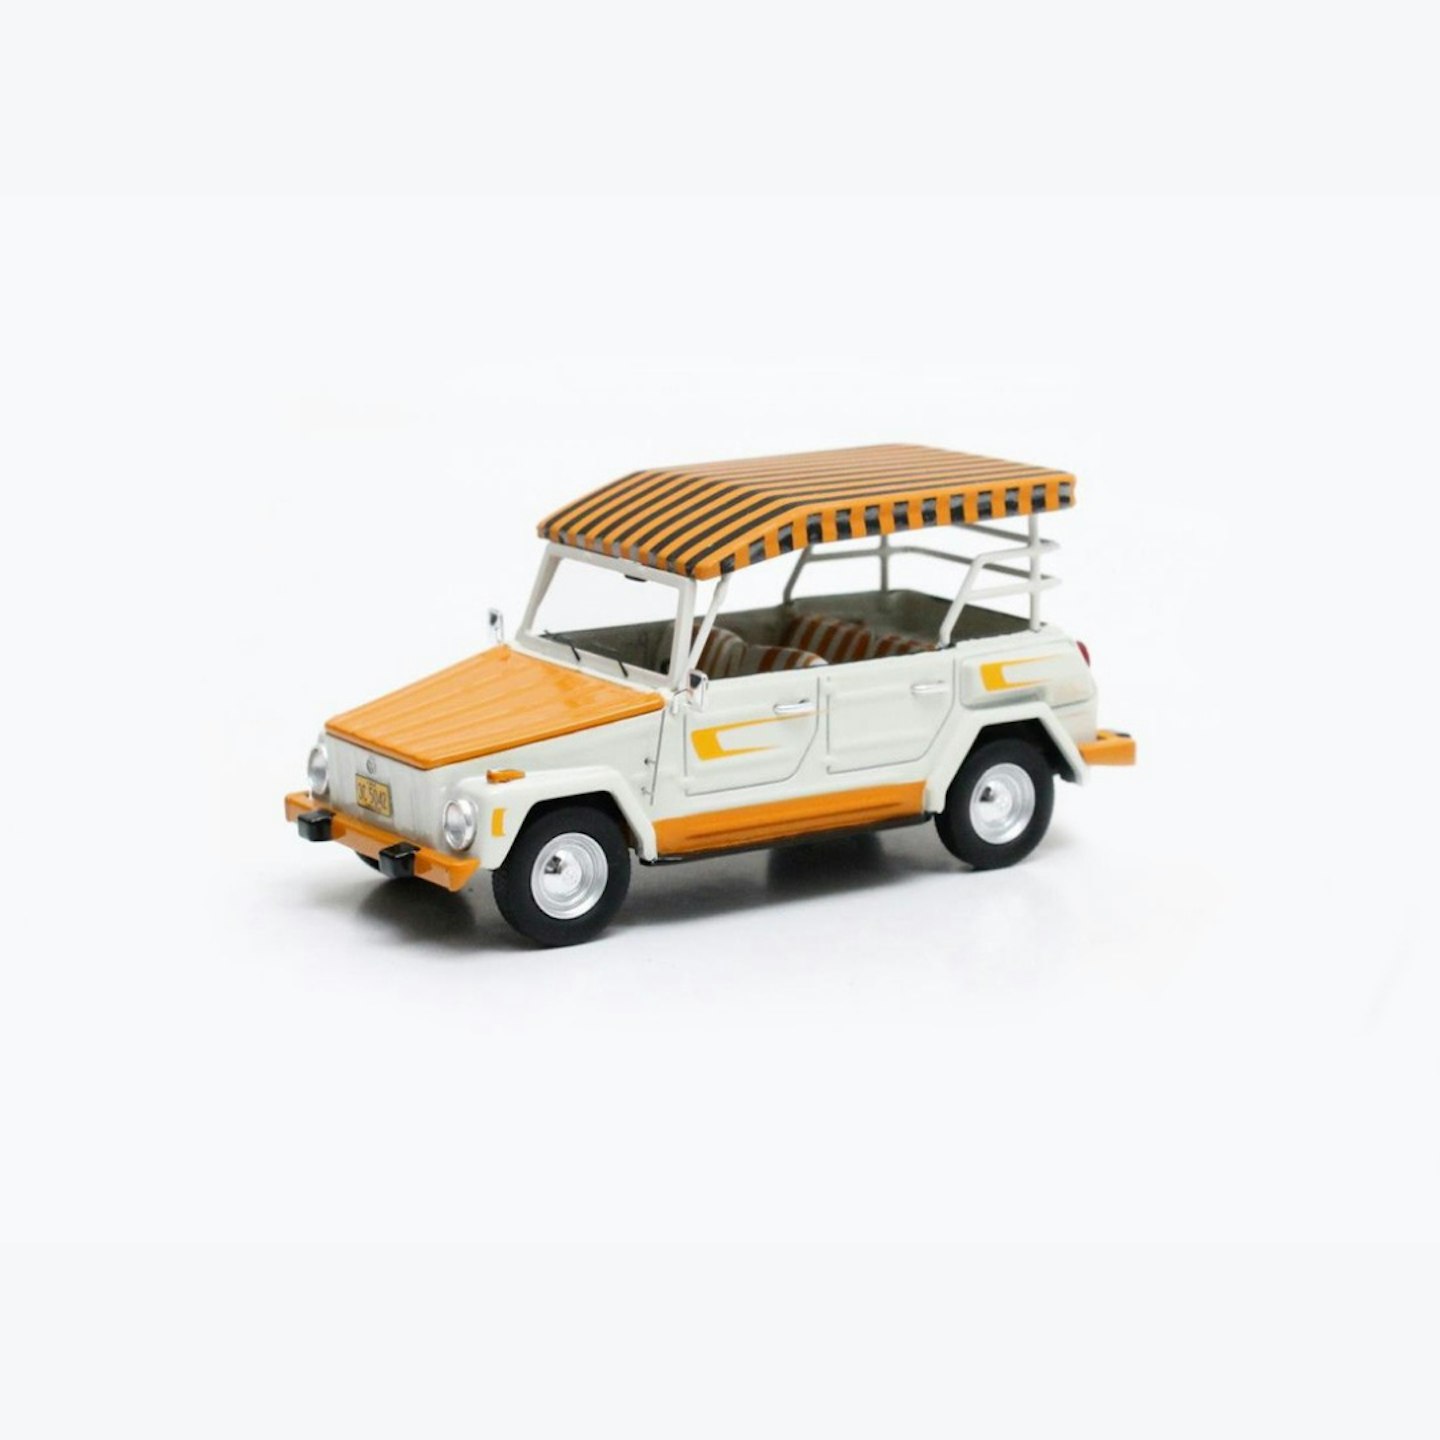 VW Thing Hawaiian edition